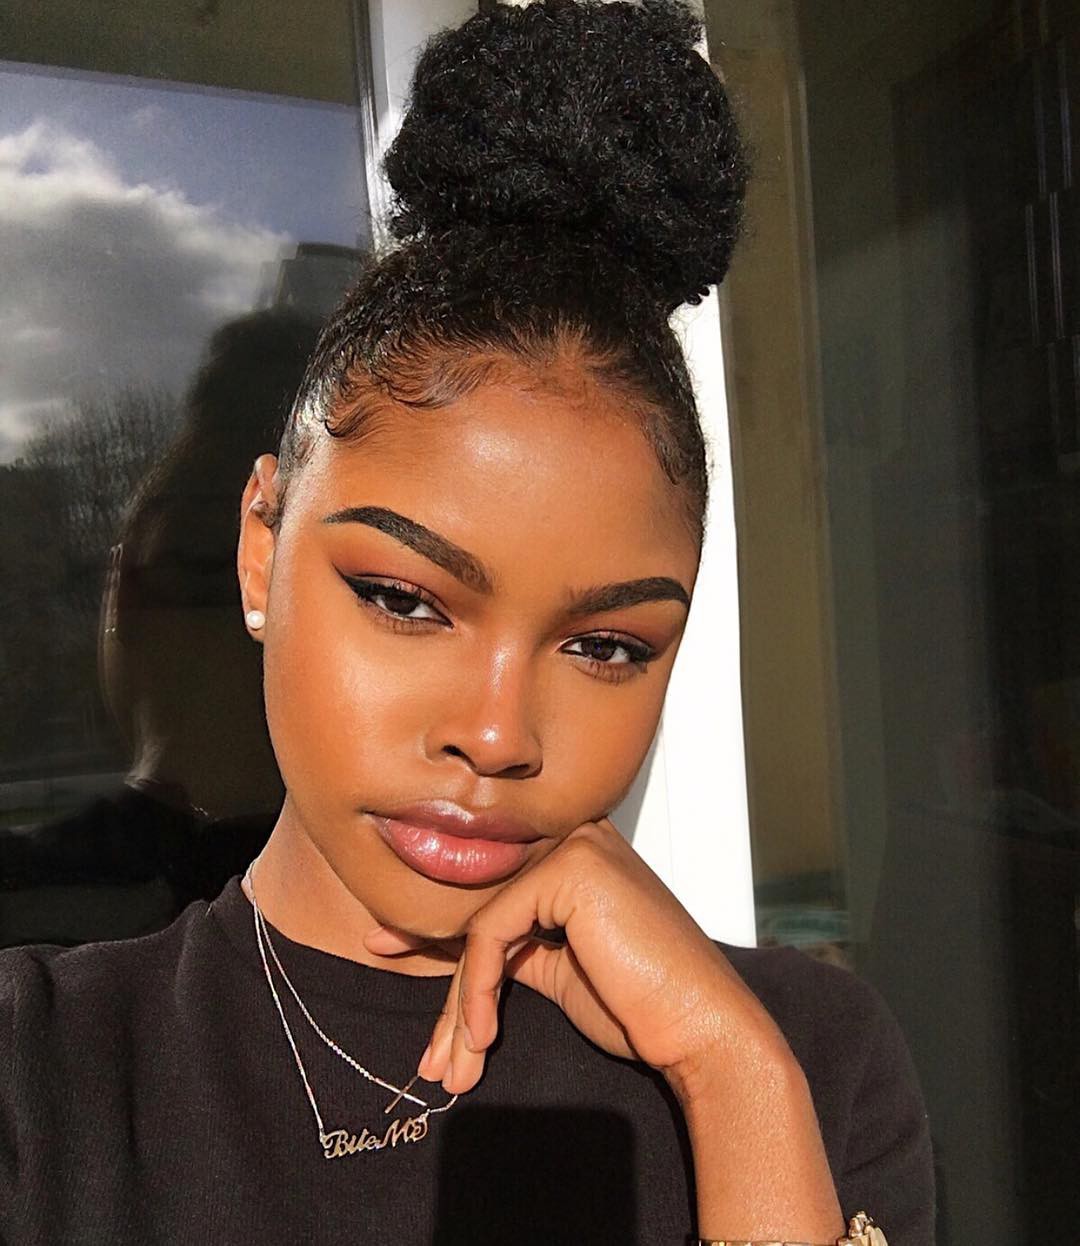 Hot Ebony Teen, integraciones de cabello artificial, cabello en la cabeza: Pelo largo,  Ideas para teñir el cabello,  Ideas de peinado,  trenzas de caja,  pelo negro,  Adolescentes calientes de Instagram  